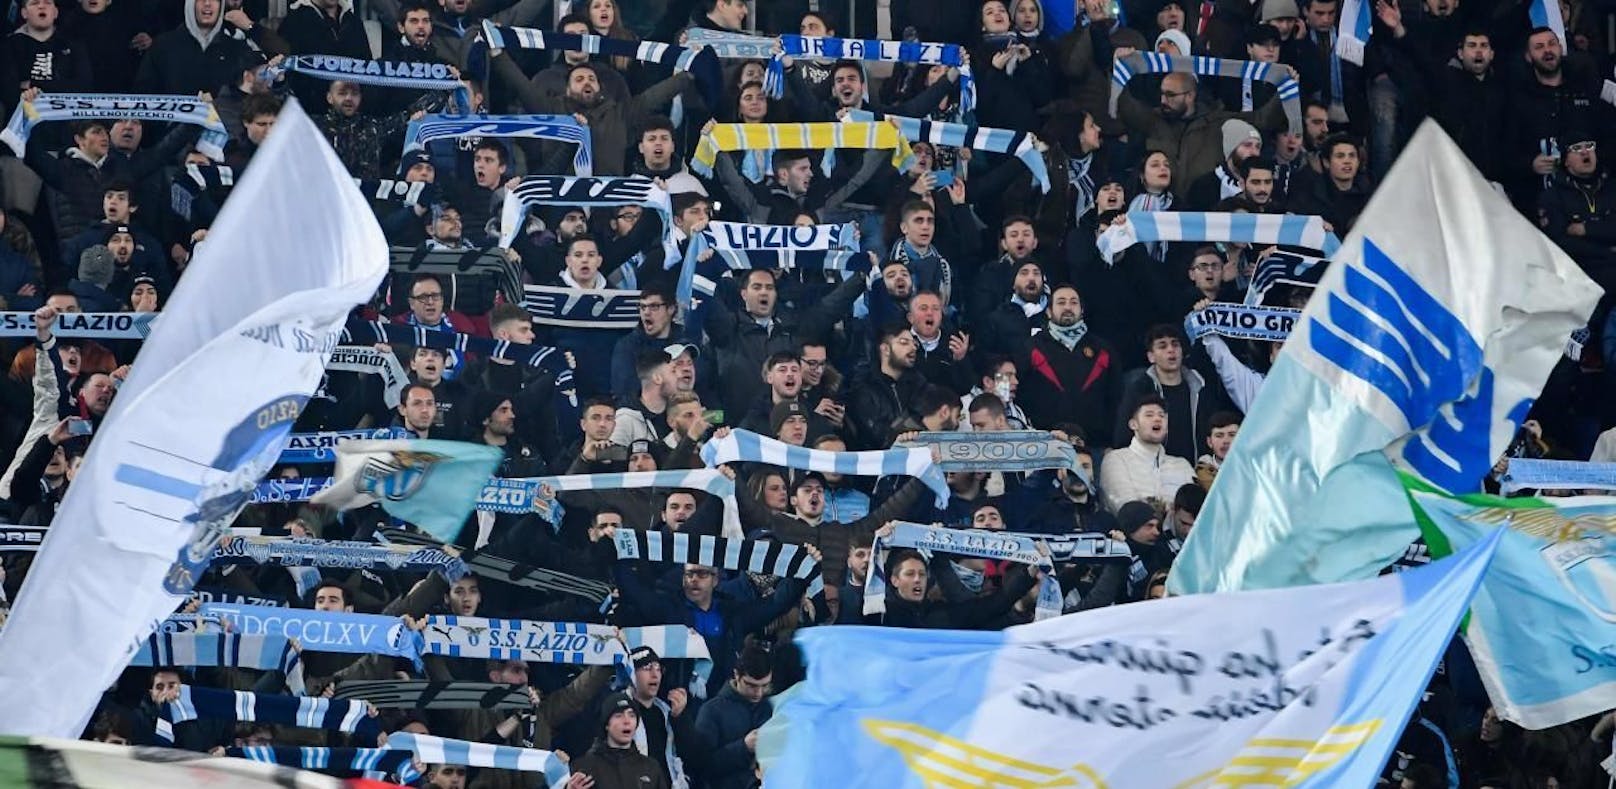 Lazio-Fans sorgen mit Mussolini-Banner für Eklat